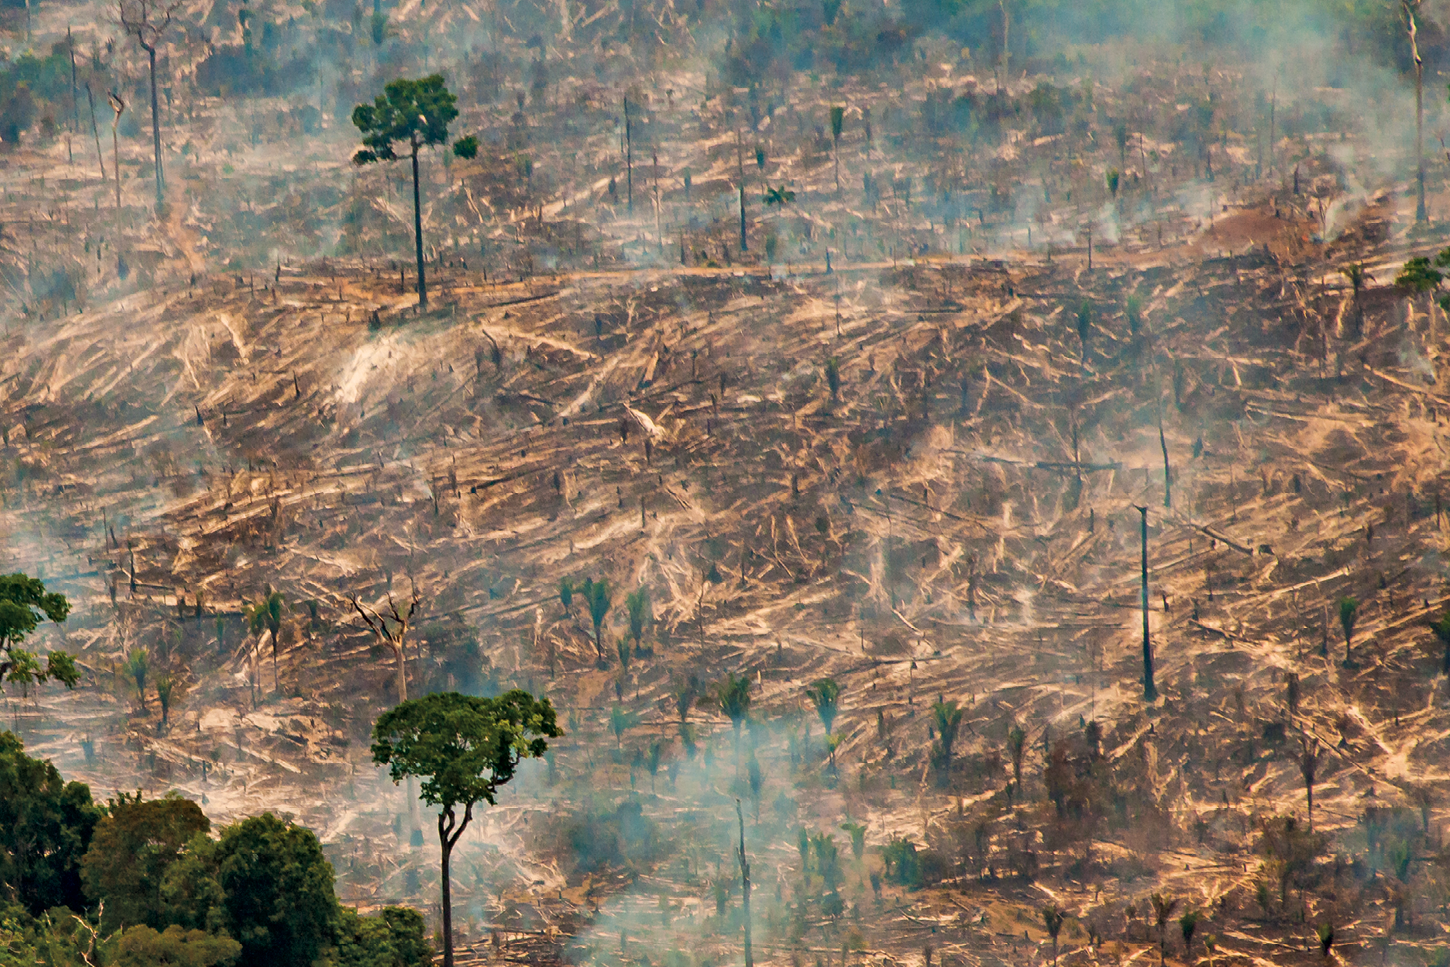 Fotografia de uma área de queimada com muita fumaça, galhos de árvores derrubados e terra com manchas escuras. Apenas algumas árvores estão intactas e com as copas com folhas verdes.